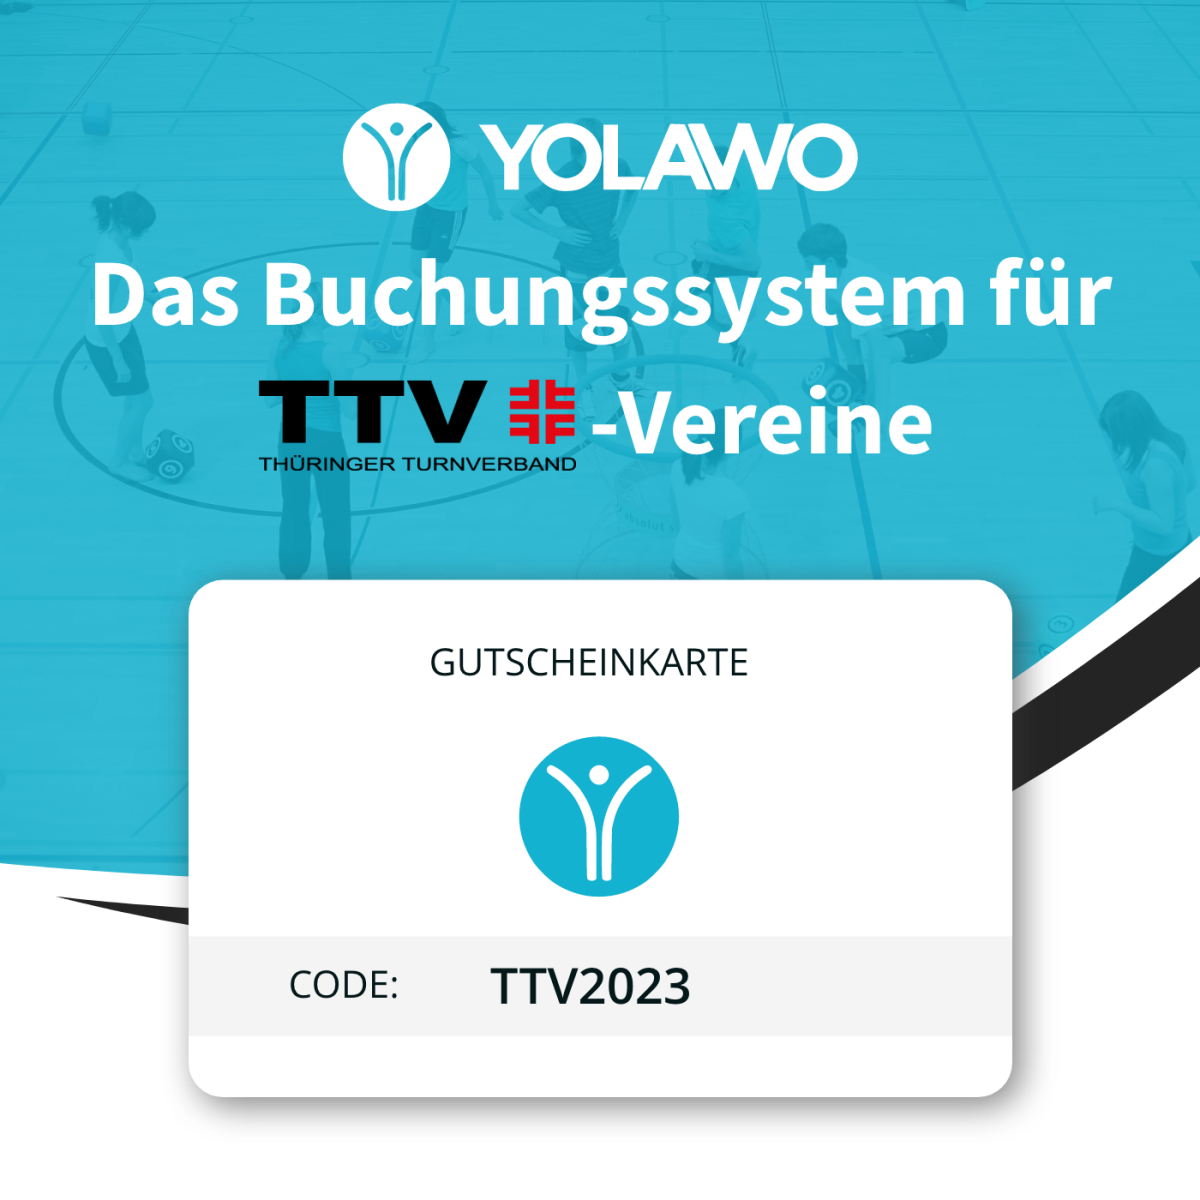 Neuer YOLAWO Gutschein-Code für TTV Vereine